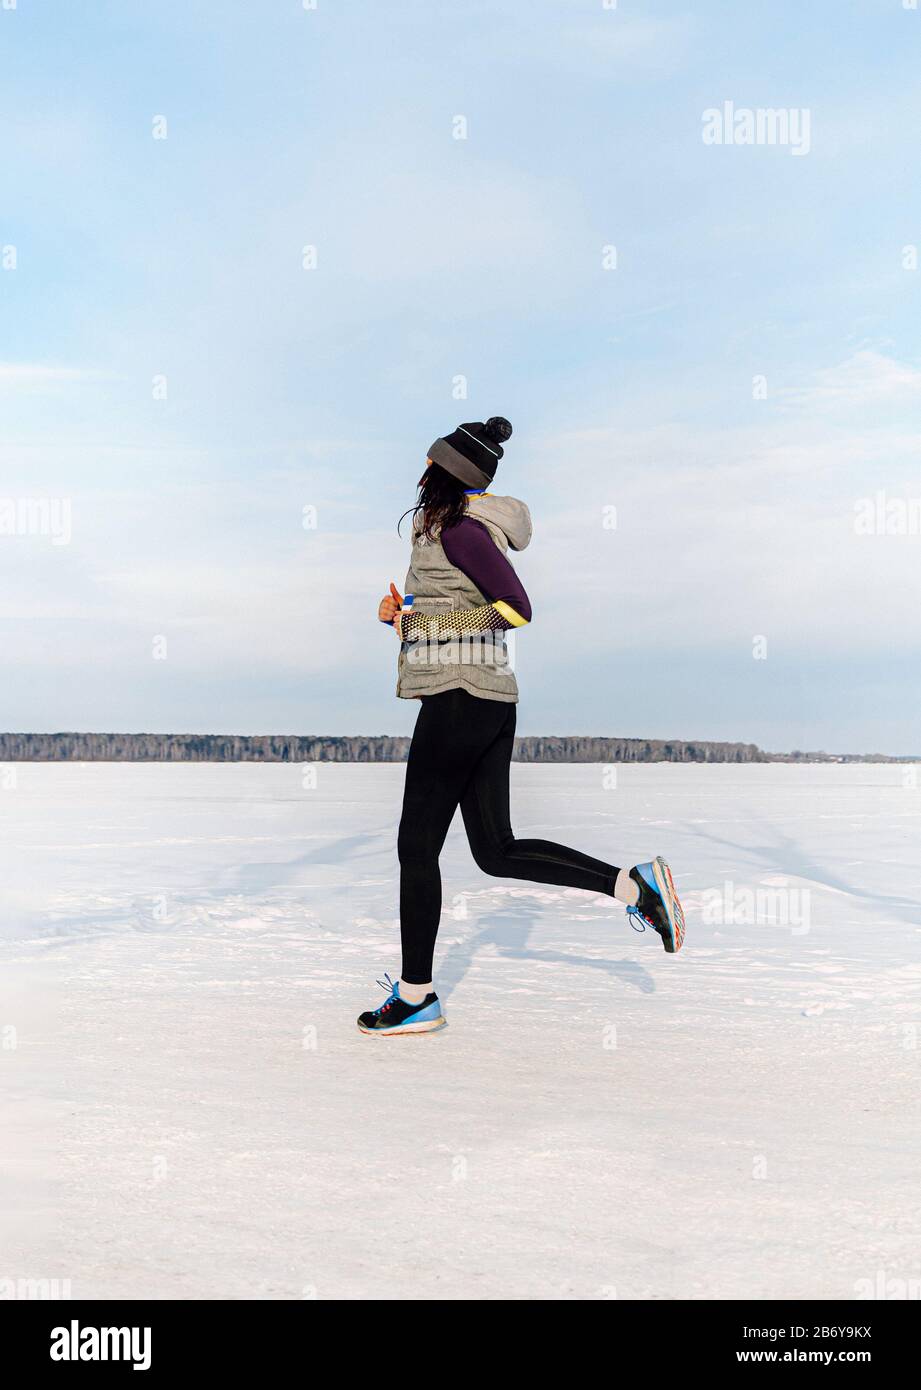 femme coureur courir champ de neige dans le marathon de sentier d'hiver Banque D'Images